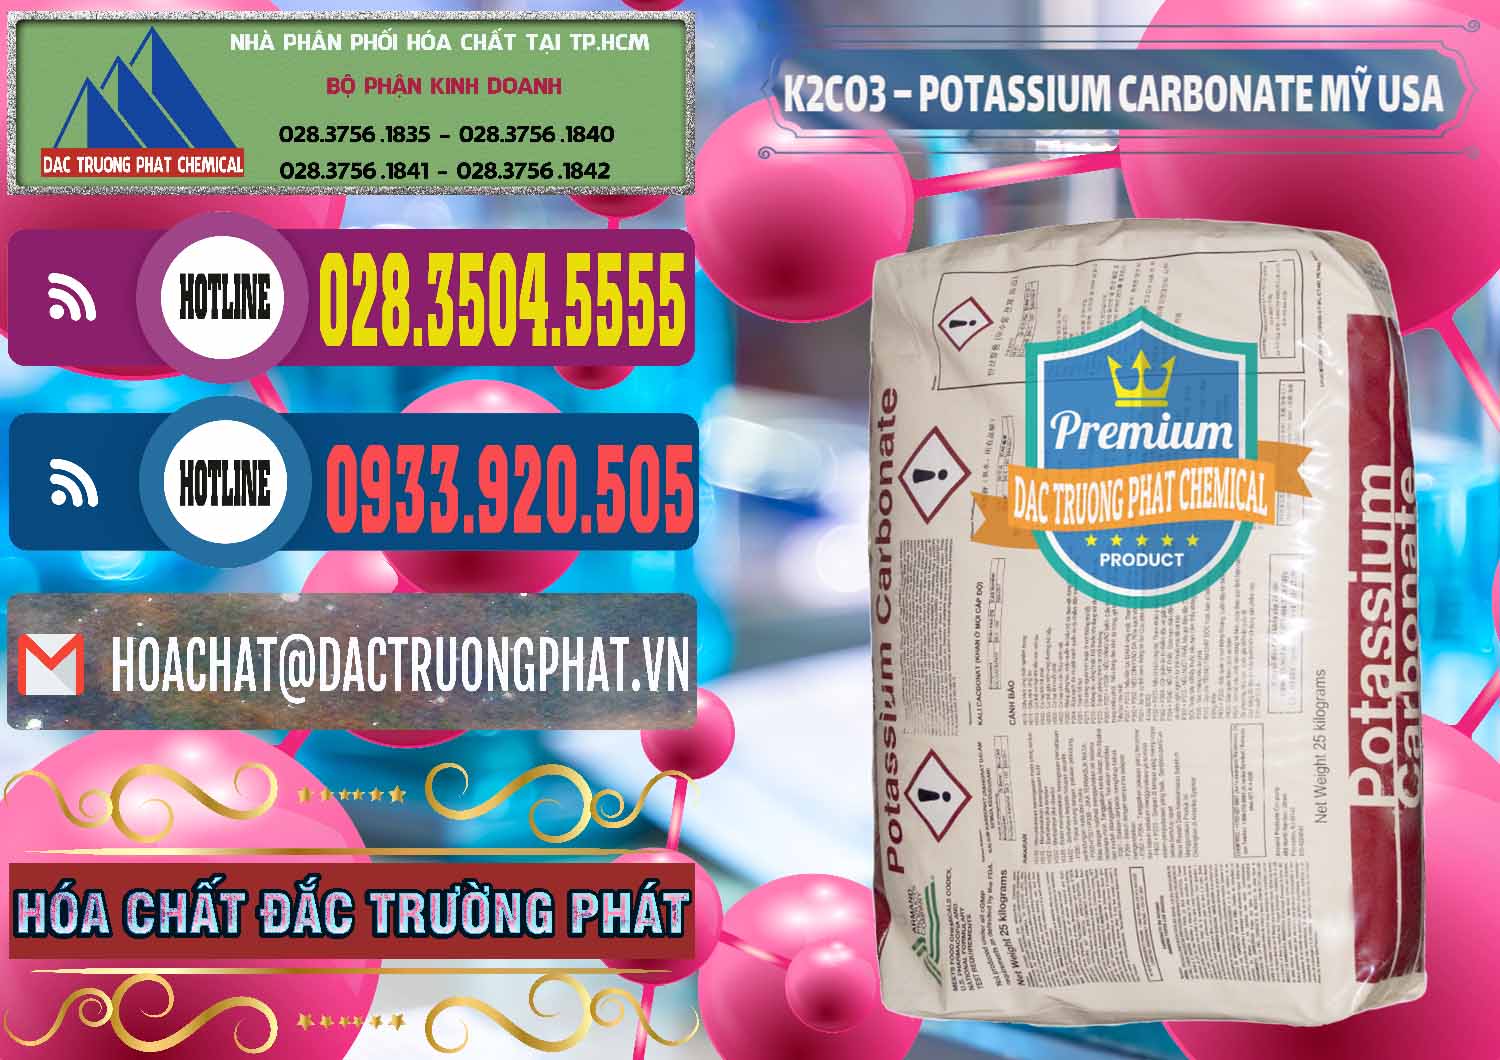 Nơi chuyên kinh doanh _ bán K2Co3 – Potassium Carbonate Mỹ USA - 0082 - Cty phân phối ( cung cấp ) hóa chất tại TP.HCM - muabanhoachat.com.vn